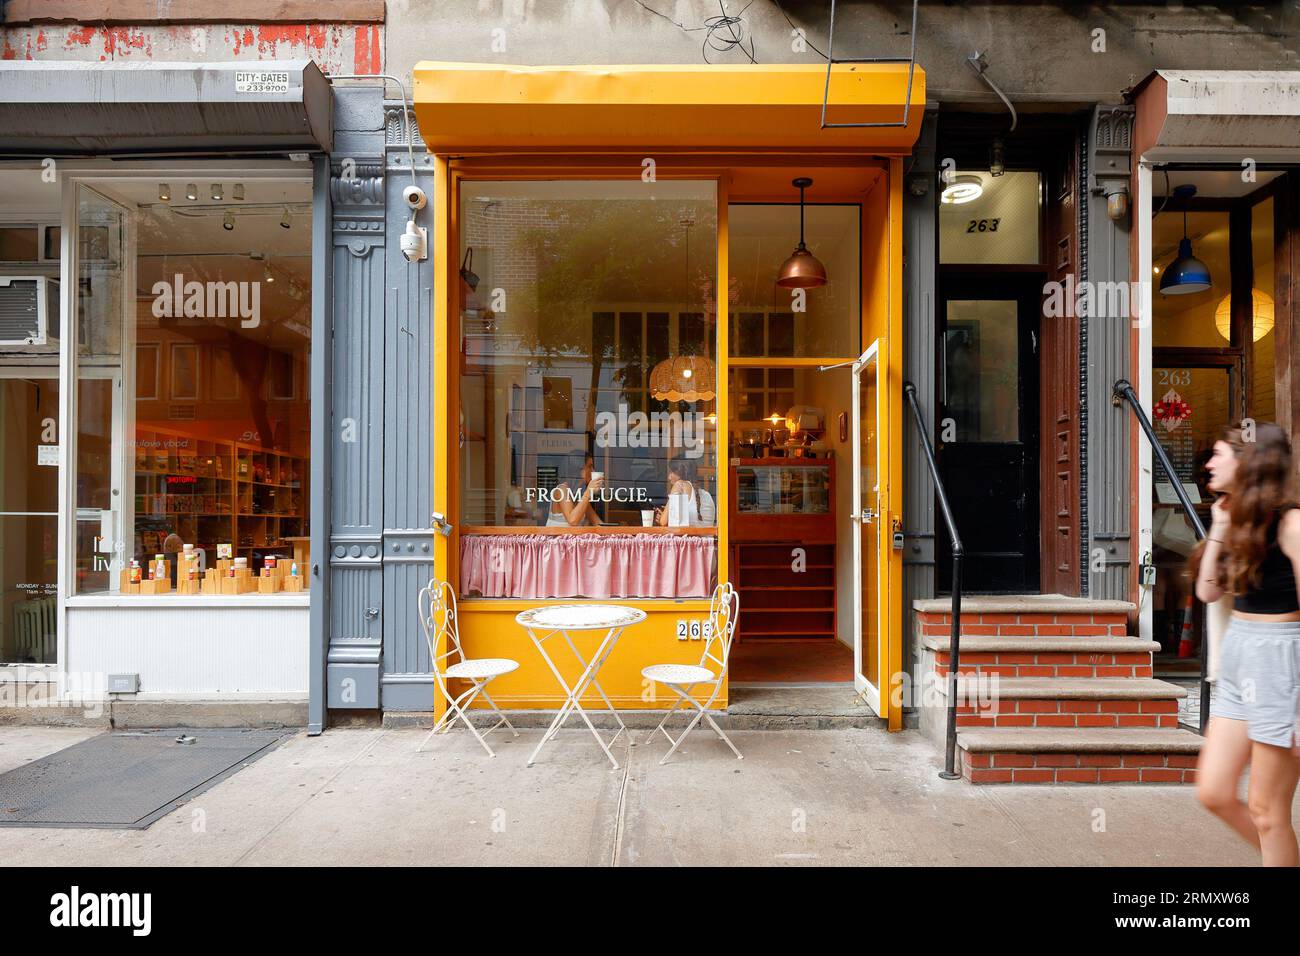 Von Lucie, 263 E 10th St, New York, New York, New York, New York, Foto einer französischen Bäckerei und eines Cafés in Manhattans East Village Nachbarschaft. Stockfoto